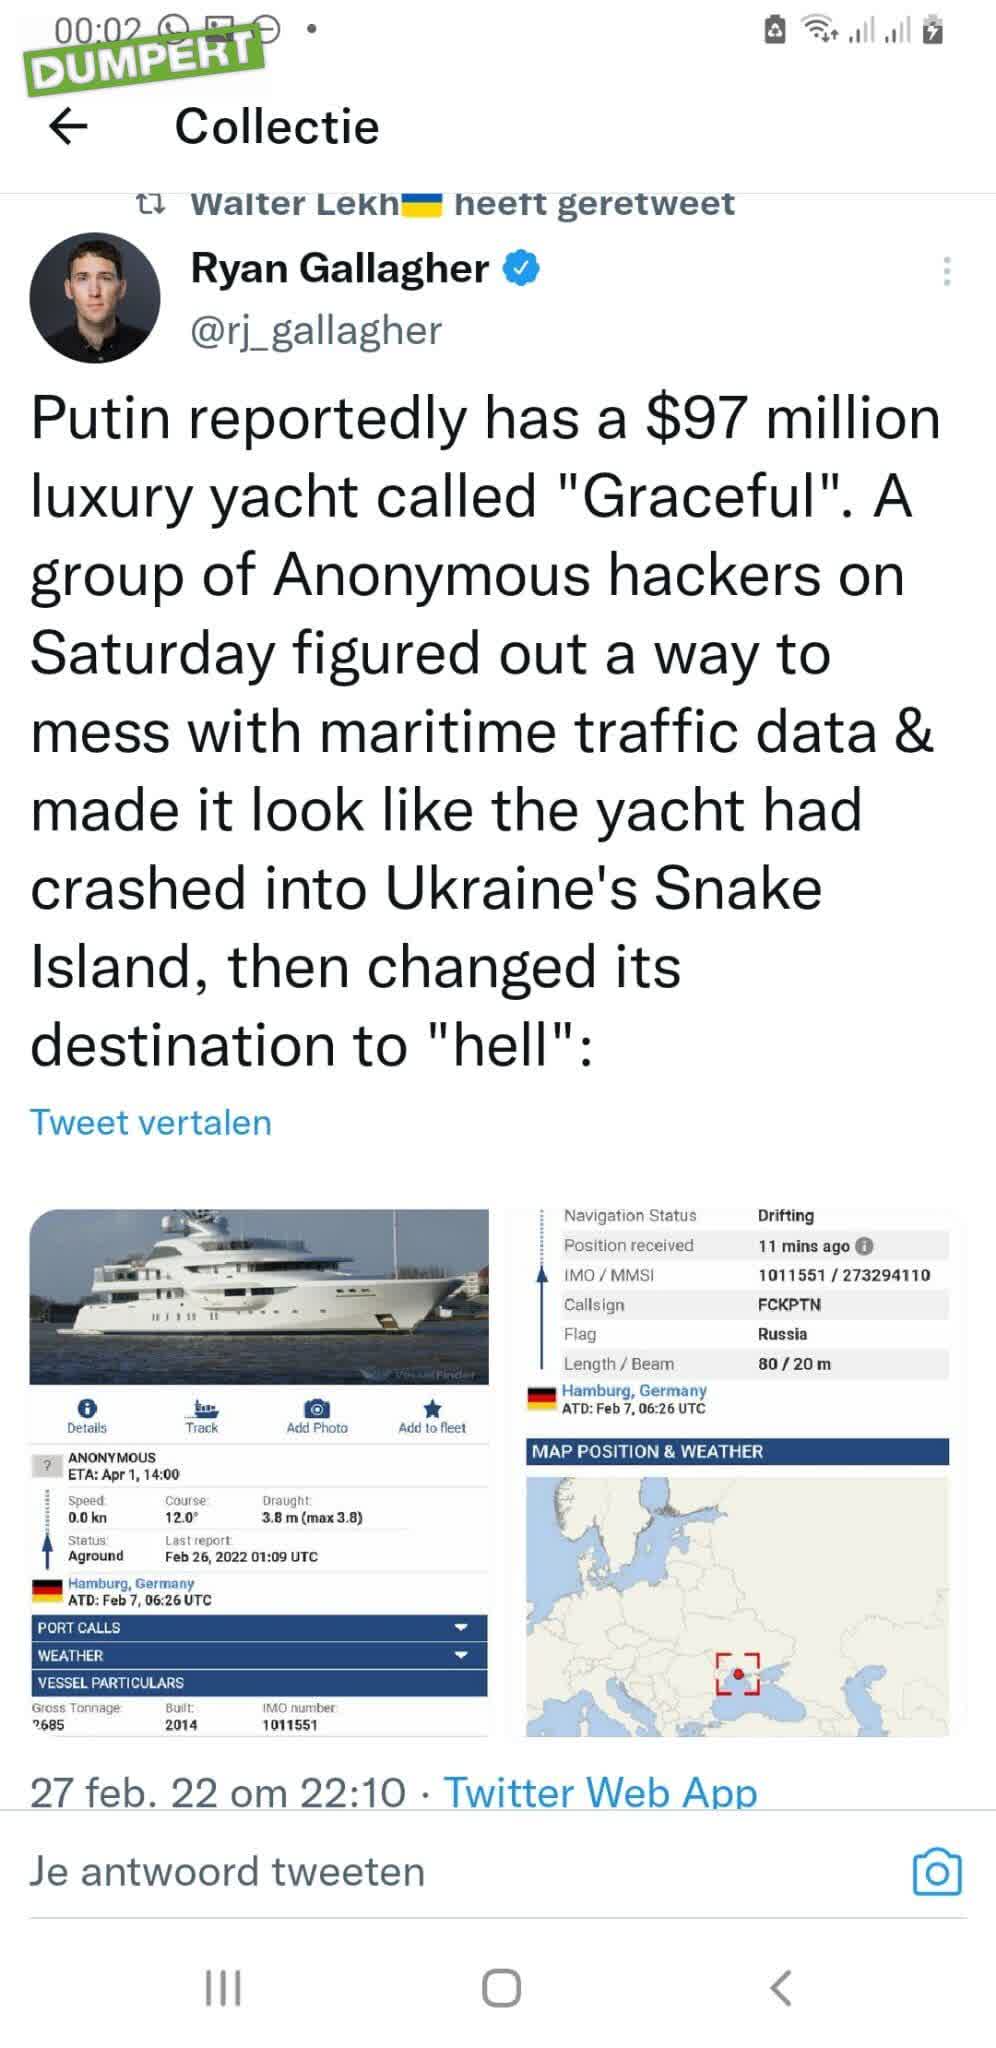 Anonhackertjes kloten met maritieme tracking